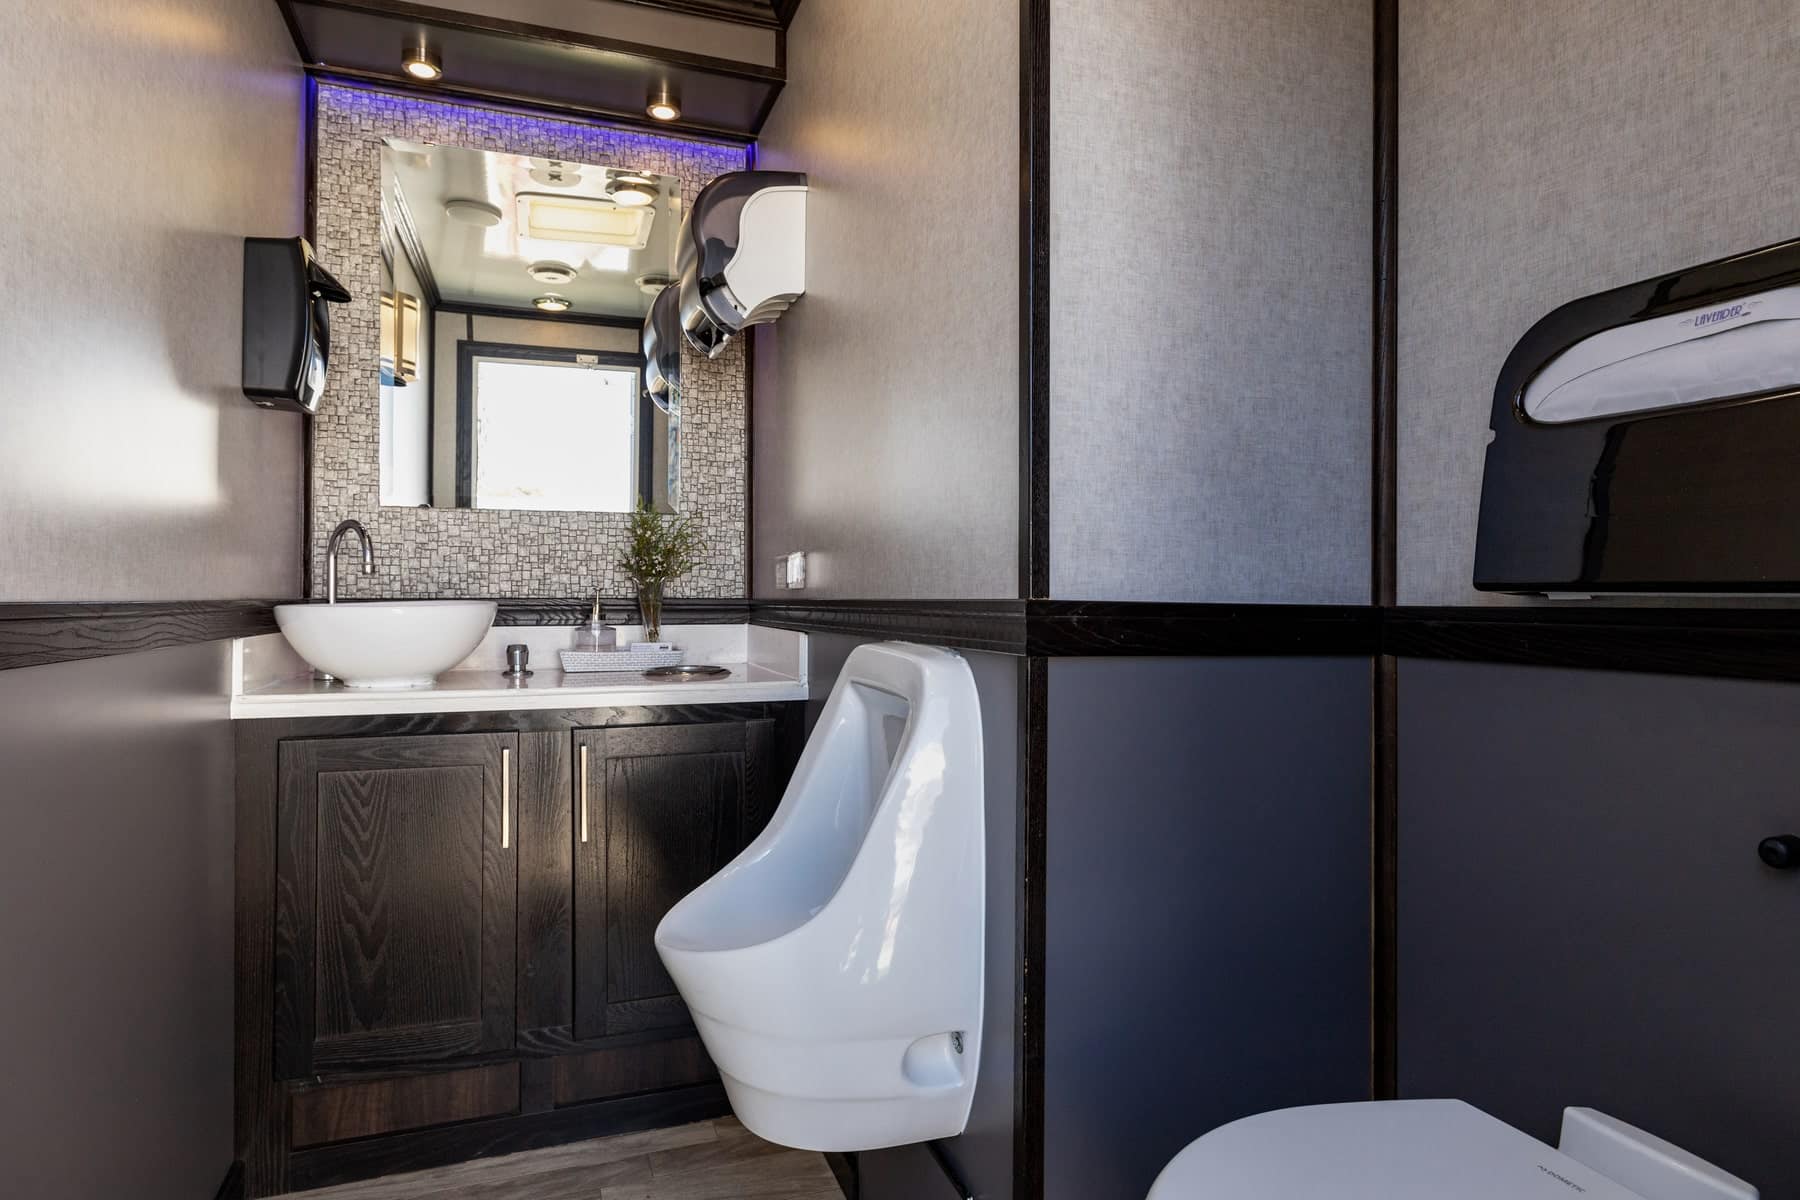 3-Station Luxury Restroom Trailer Rental – Interior View 1